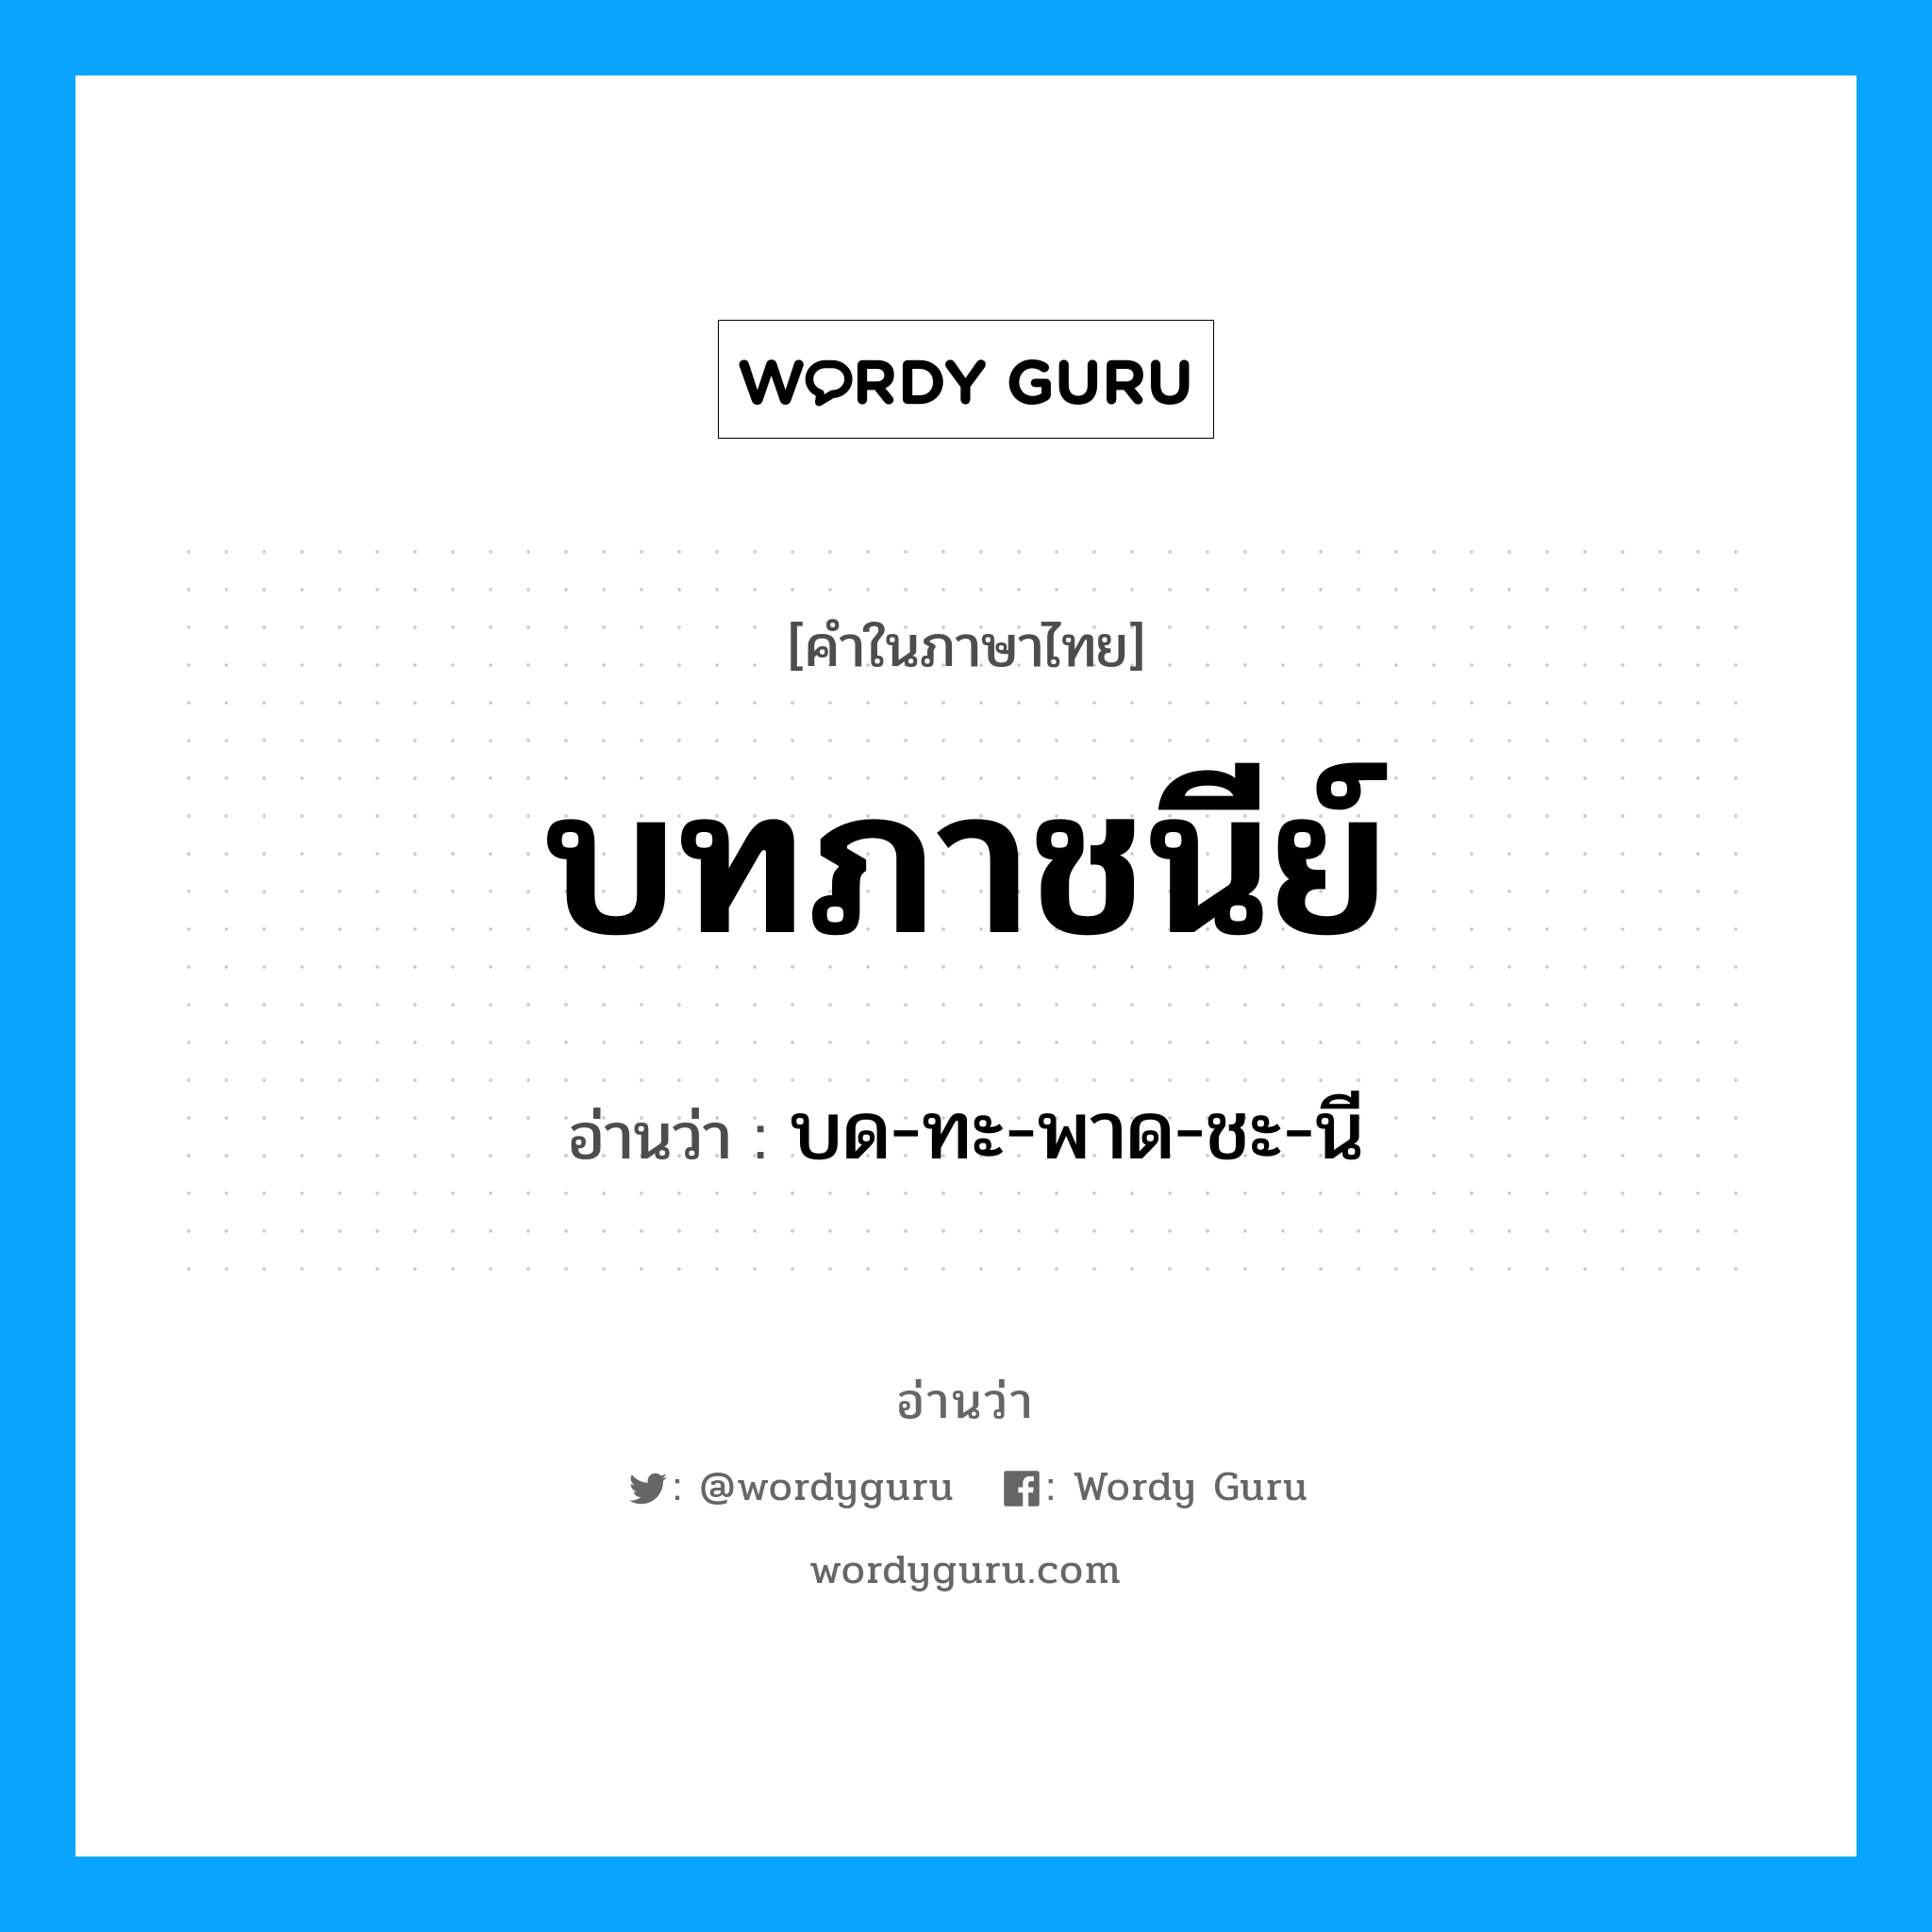 บด-ทะ-พาด-ชะ-นี เป็นคำอ่านของคำไหน?, คำในภาษาไทย บด-ทะ-พาด-ชะ-นี อ่านว่า บทภาชนีย์